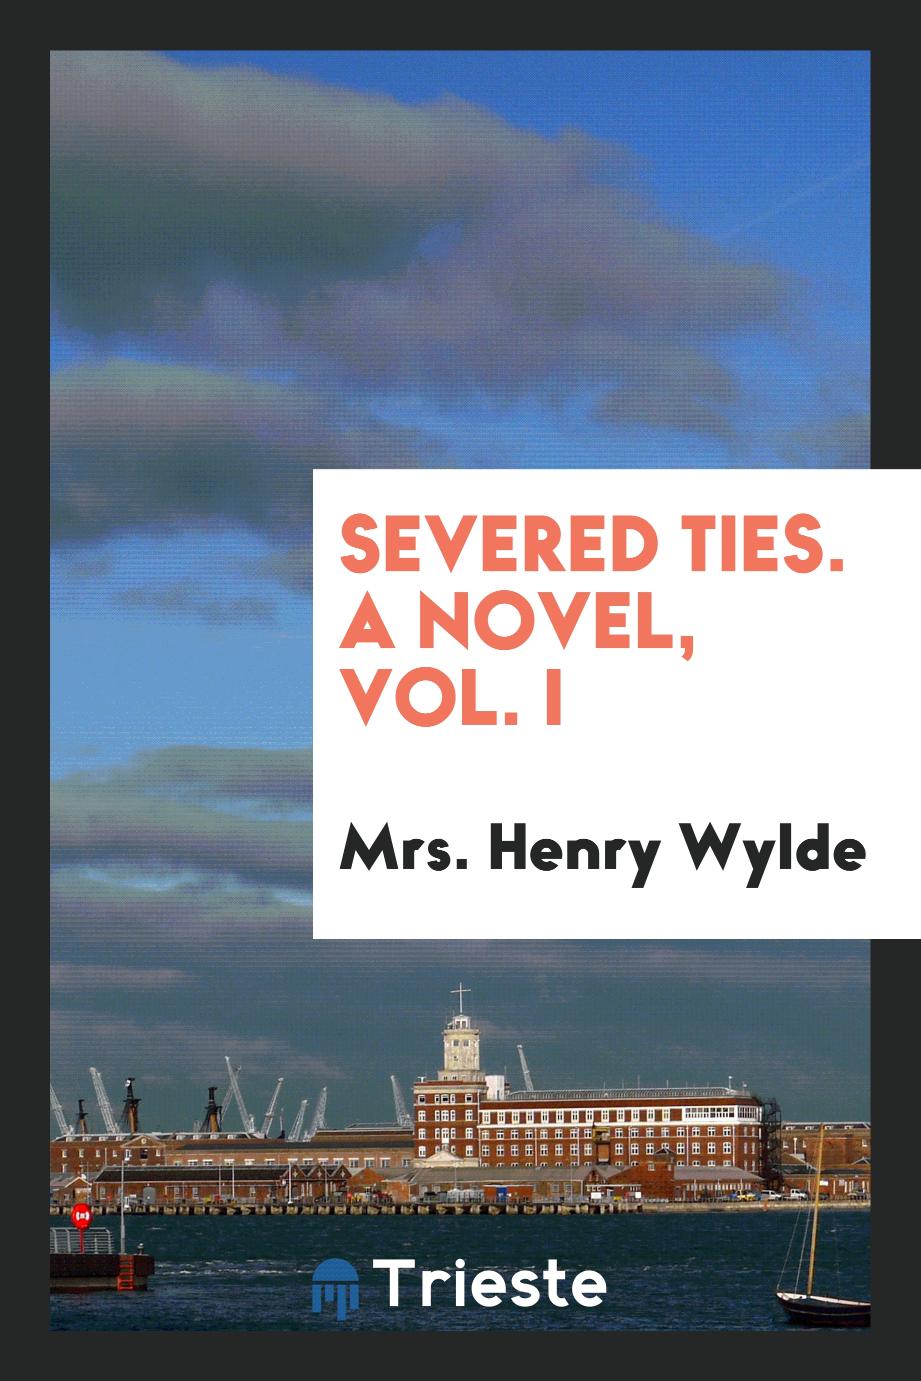 Severed ties. A novel, Vol. I